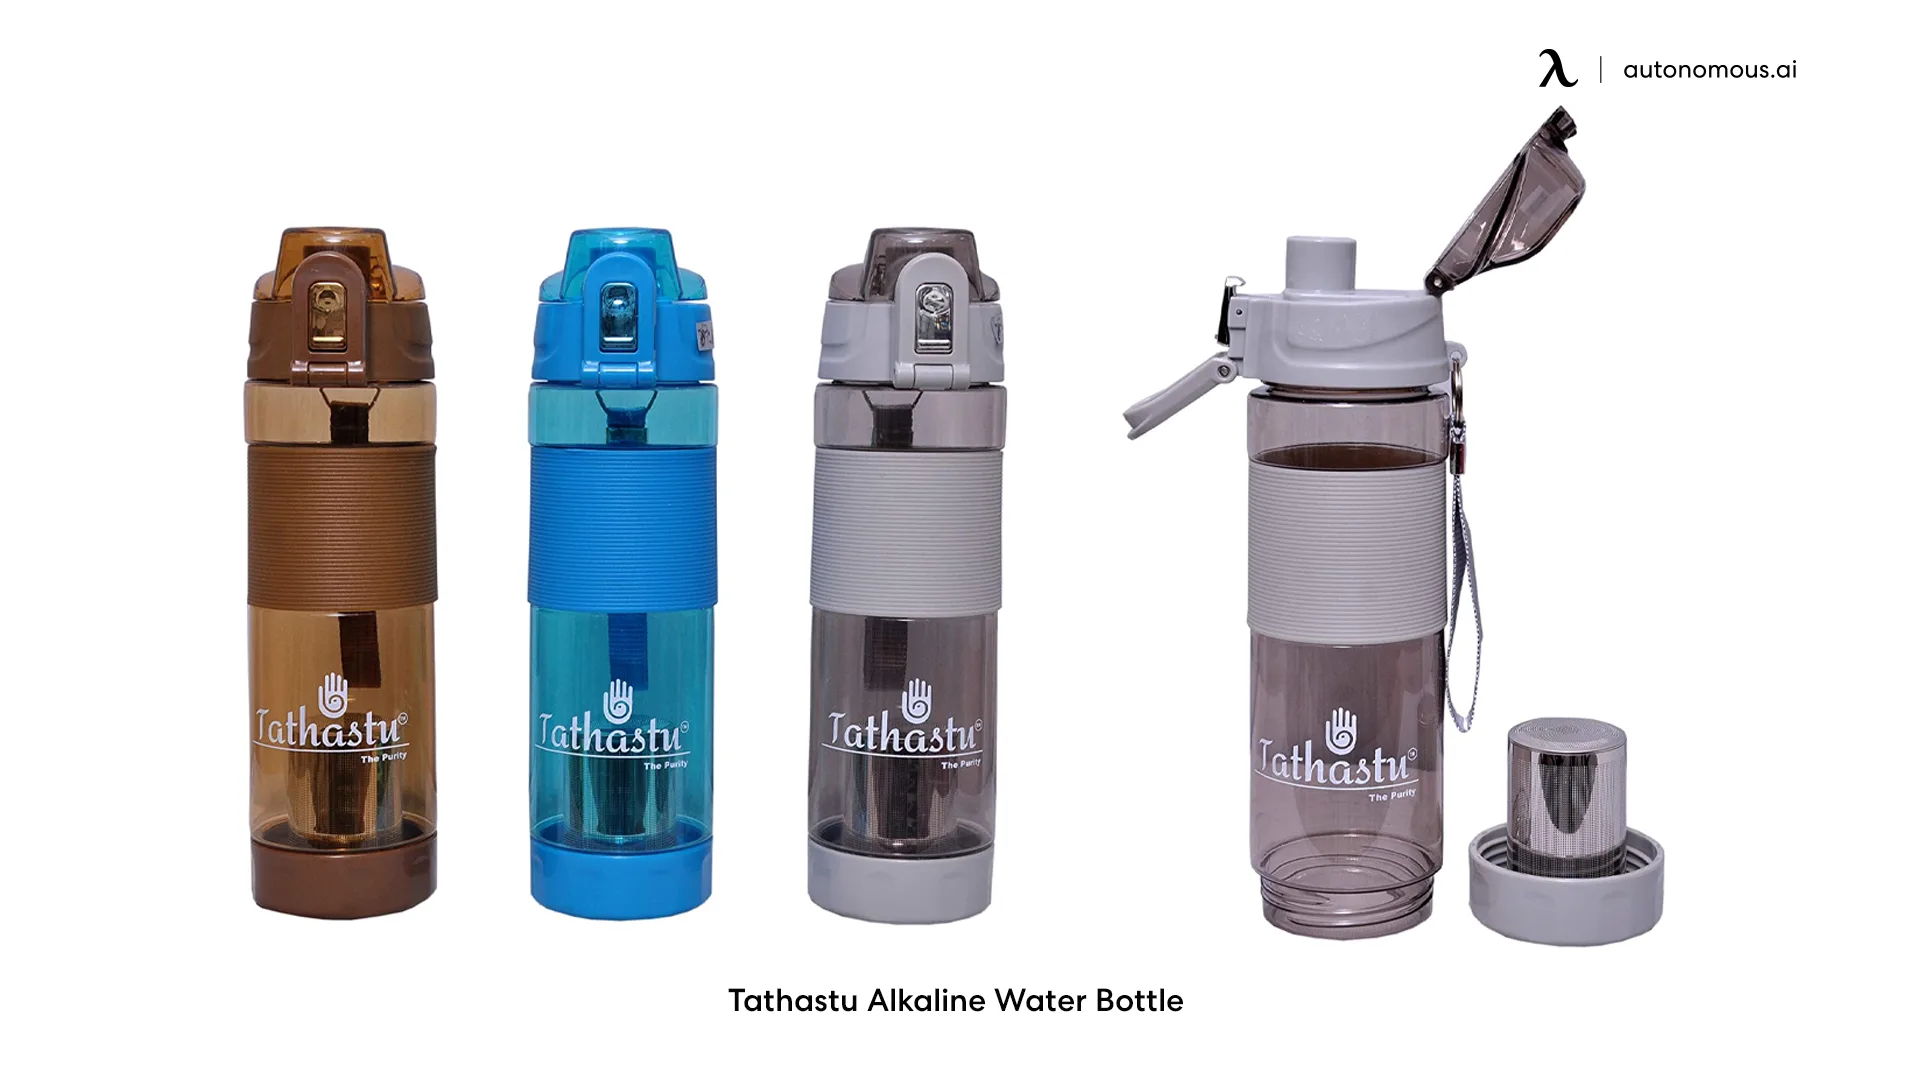 Tathastu Alkaline Water Bottle